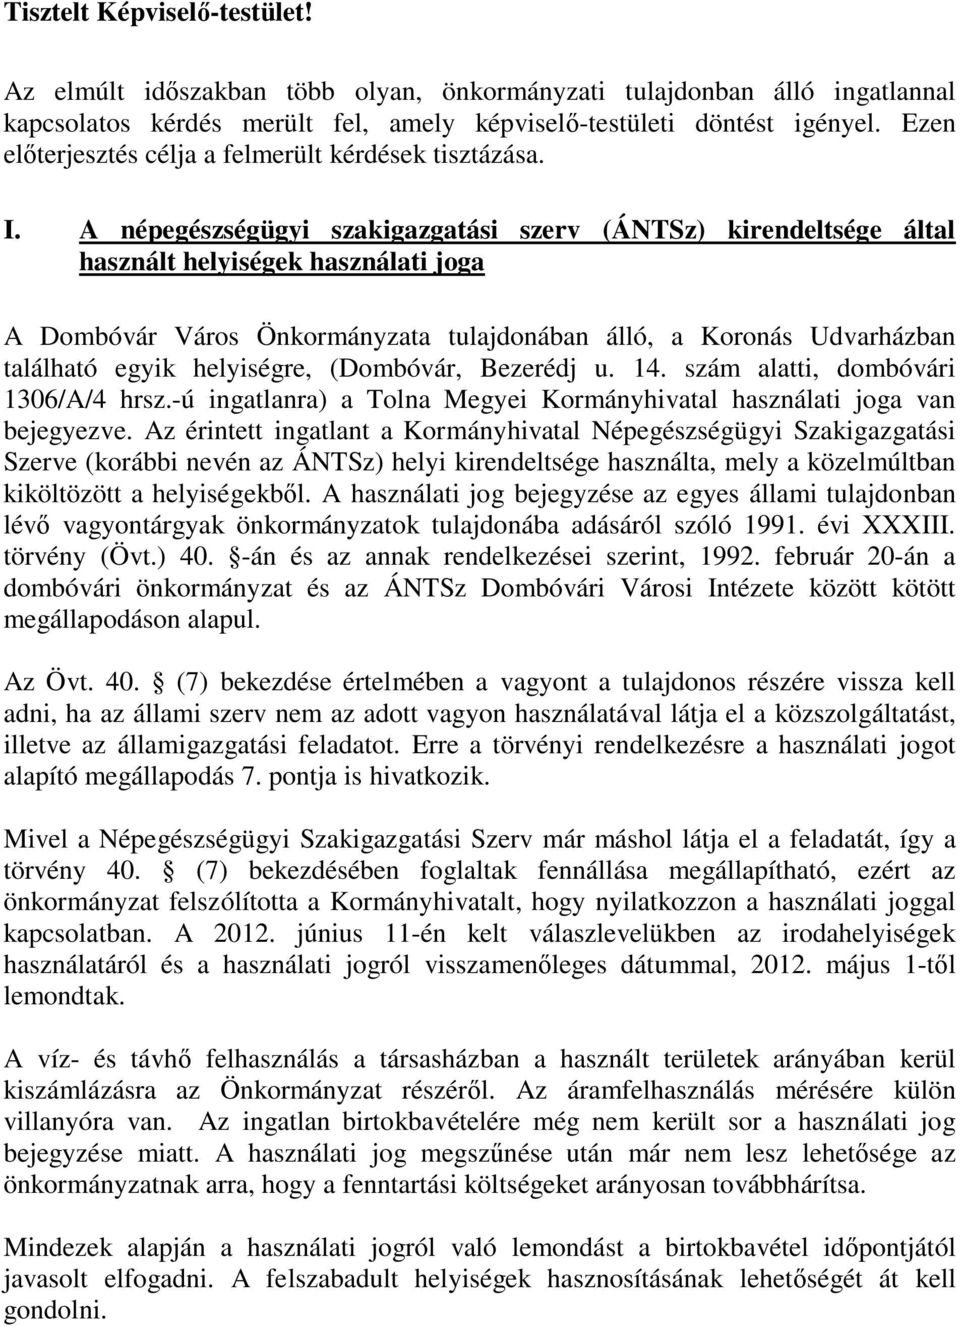 A népegészségügyi szakigazgatási szerv (ÁNTSz) kirendeltsége által használt helyiségek használati joga A Dombóvár Város Önkormányzata tulajdonában álló, a Koronás Udvarházban található egyik